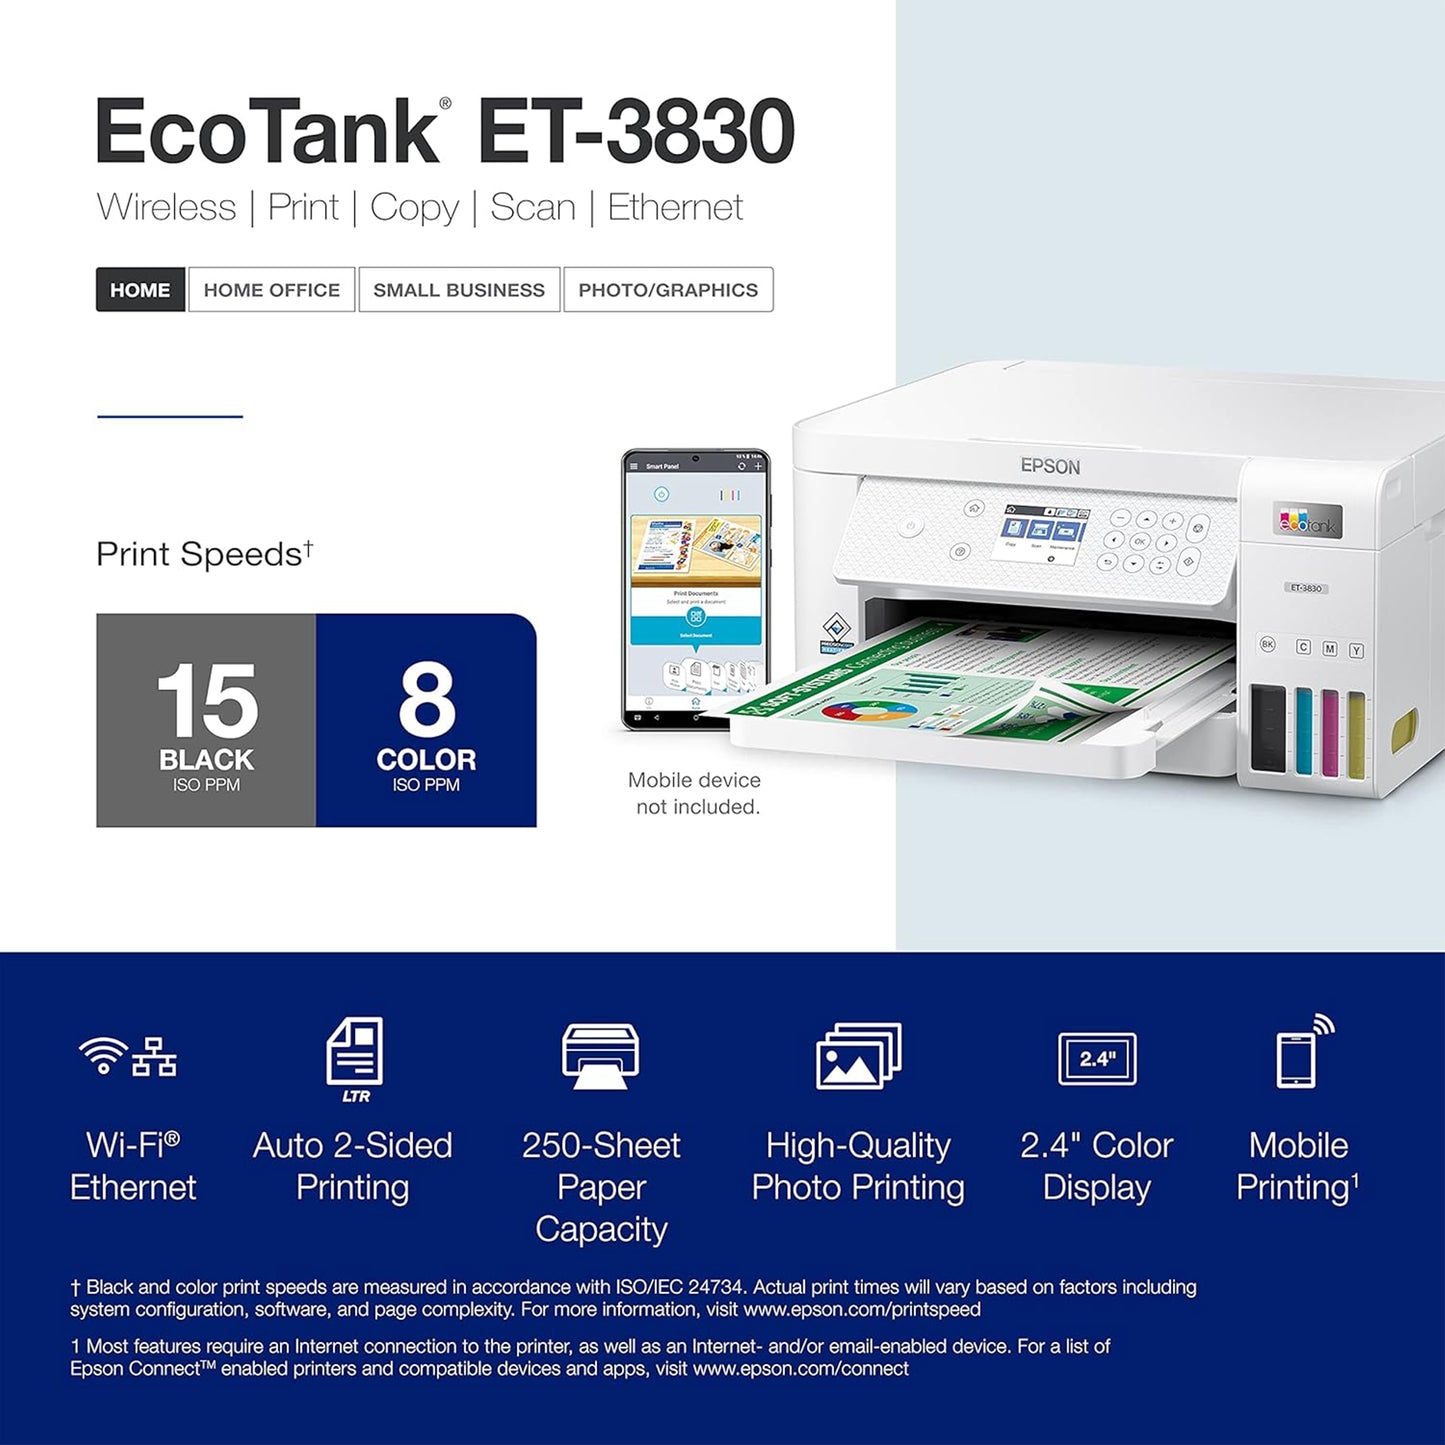 طابعة Epson EcoTank ET-3830 Supertank اللاسلكية الملونة الكل في واحد خالية من خرطوشة مع المسح الضوئي والنسخ والطباعة التلقائية على الوجهين والإيثرنت (متجددة)، أبيض 